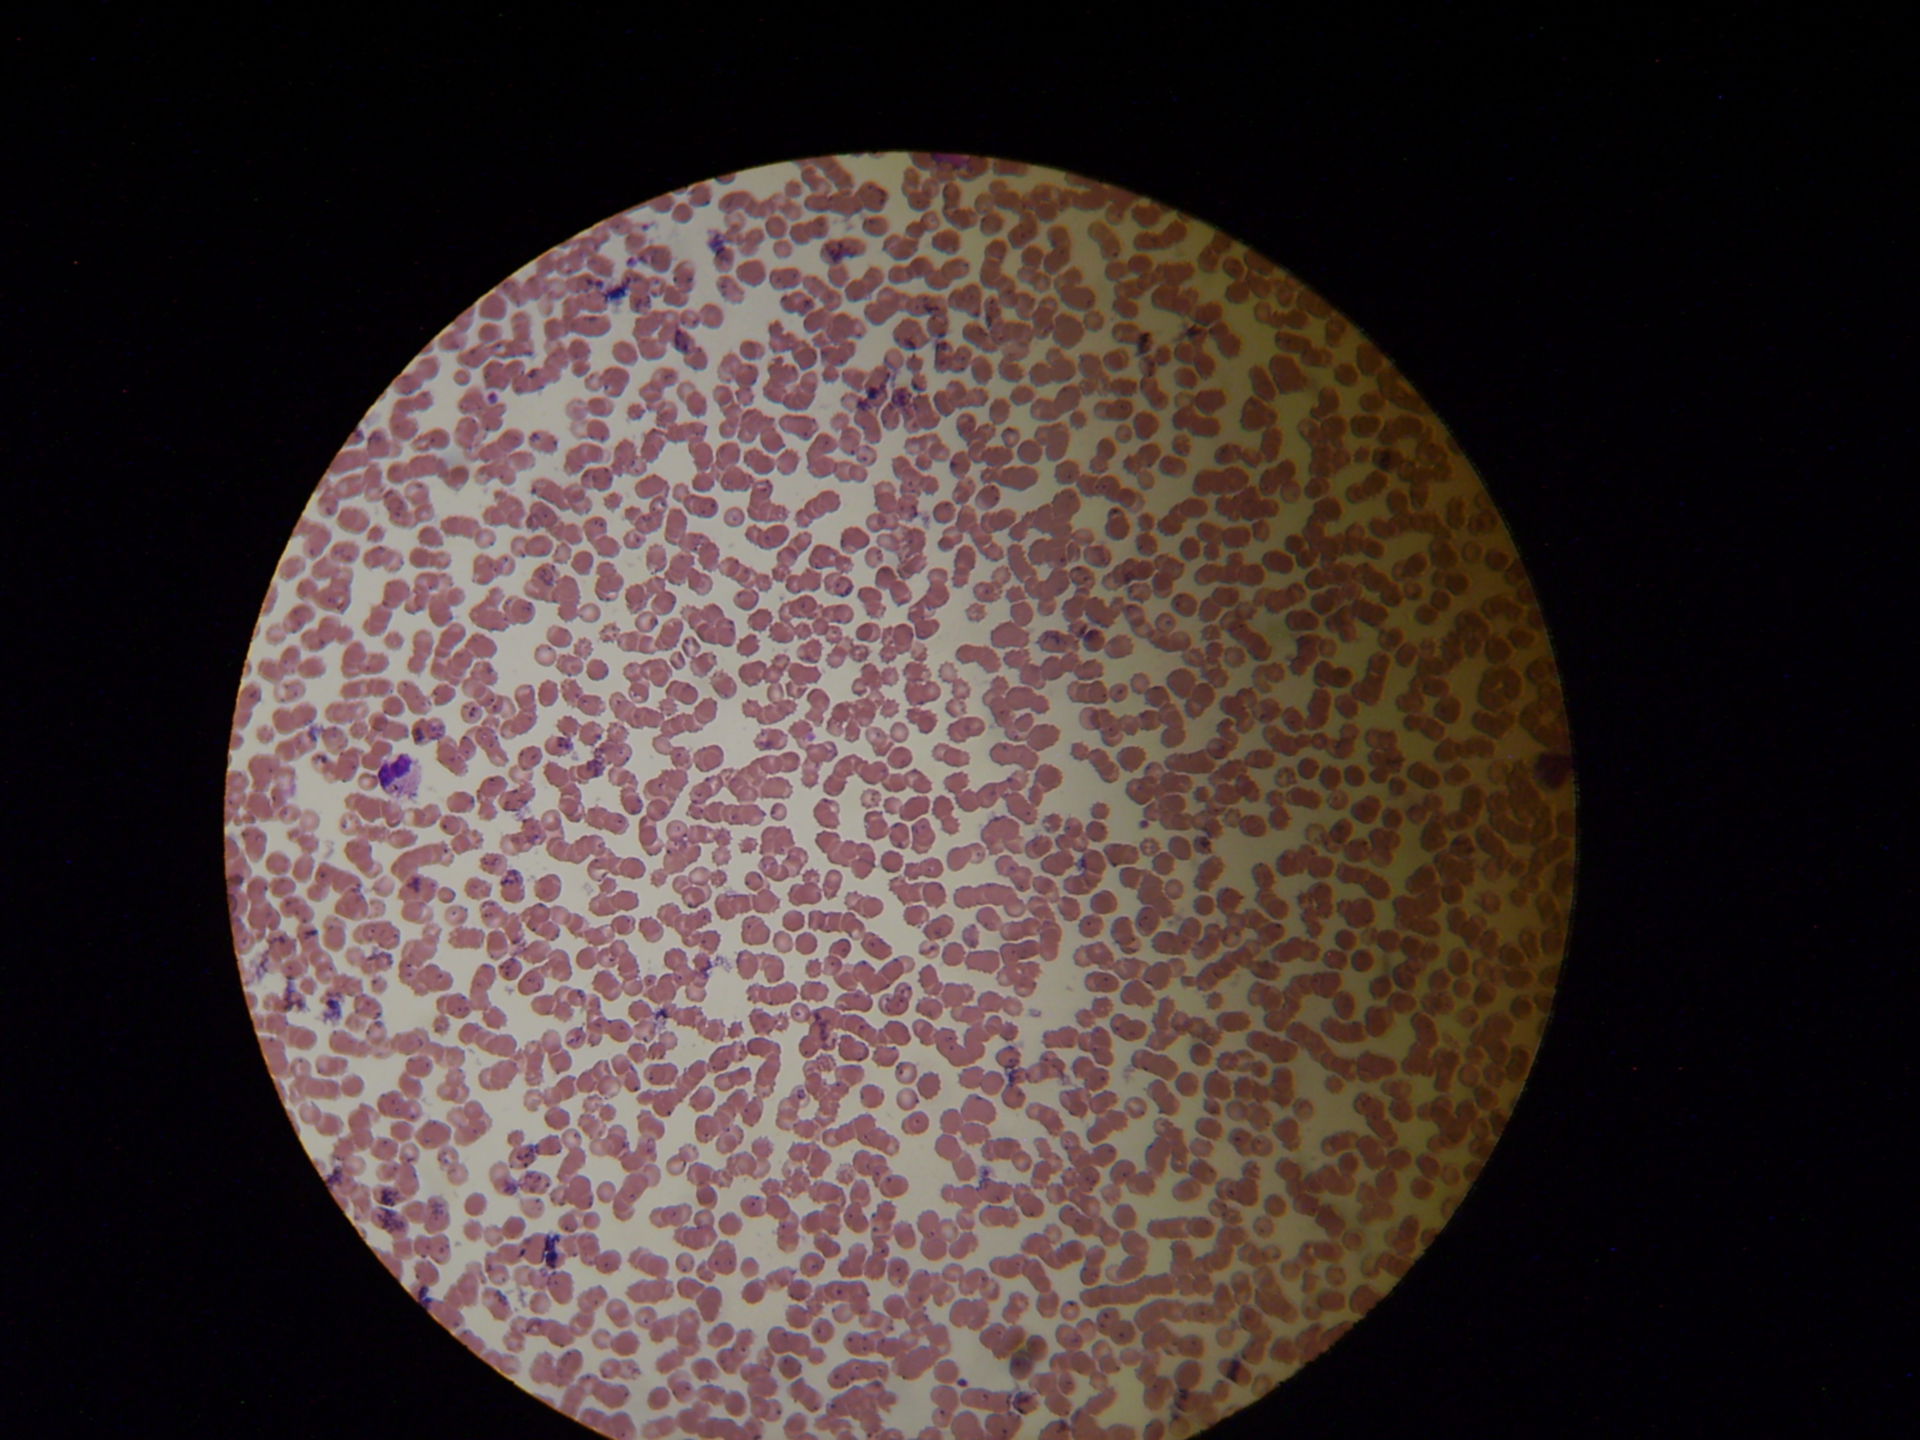 Malaria plasmodium falciparum